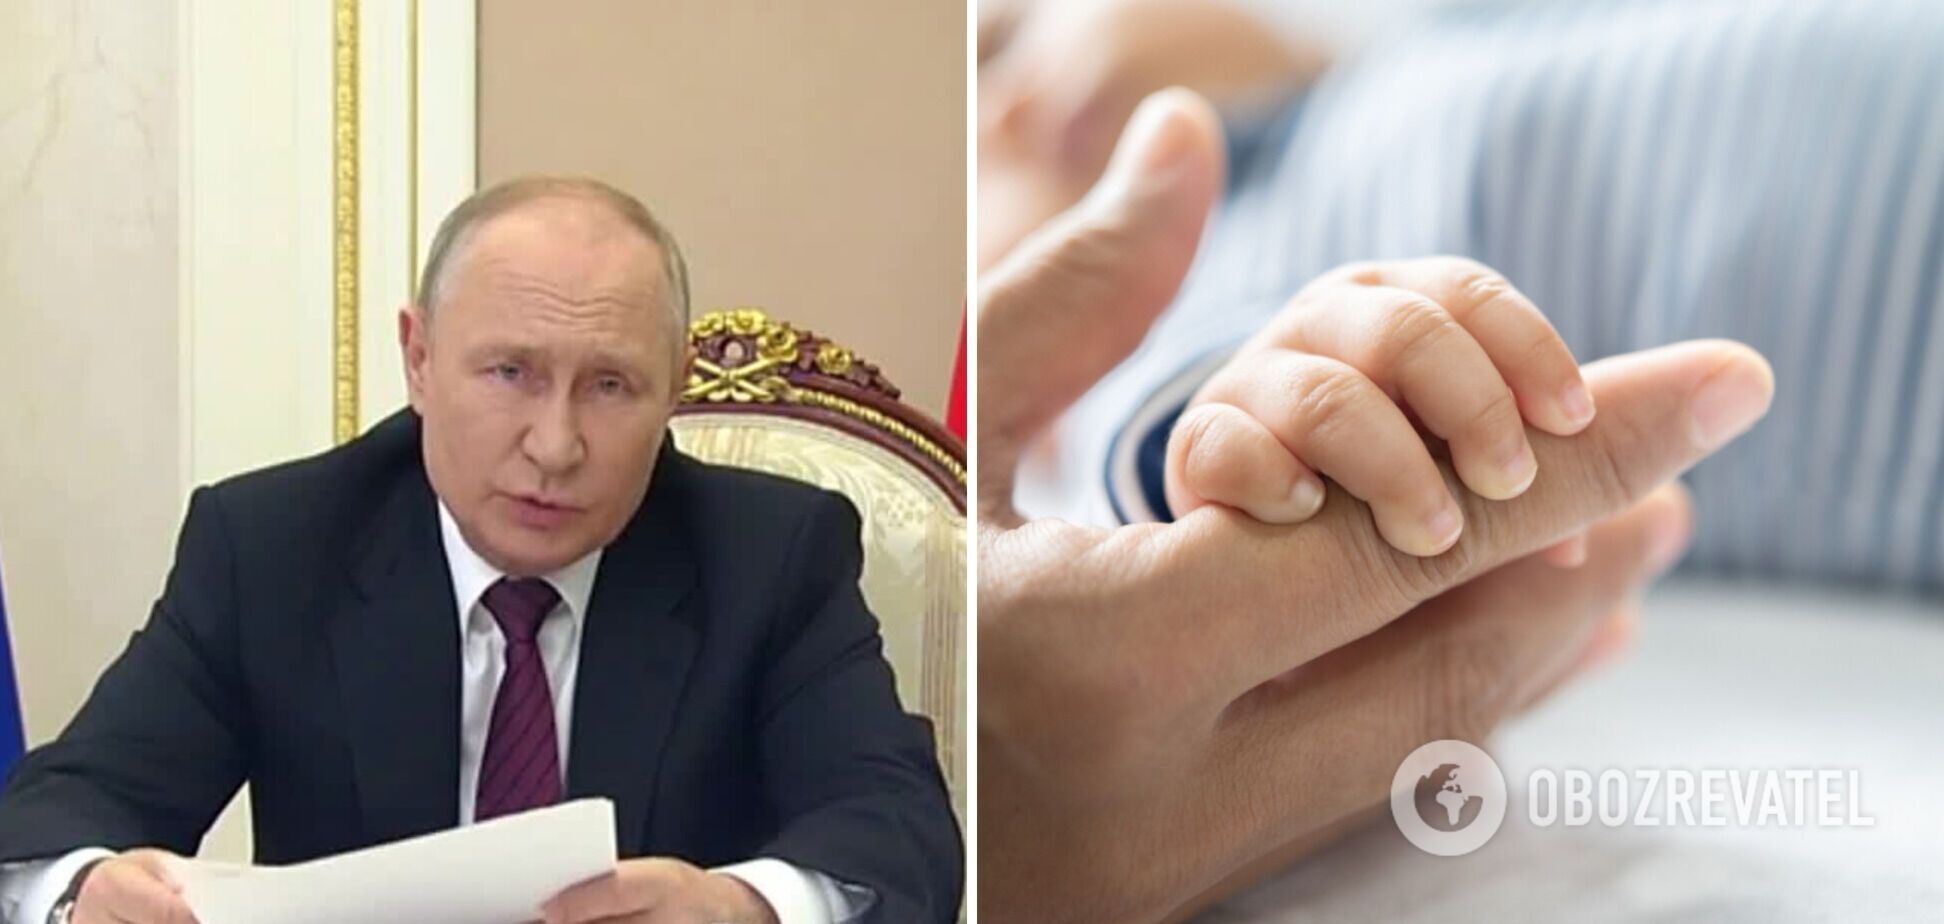 'Народжується дедалі менше дітей': Путін забив на сполох через критичну демографічну ситуацію в Росії. Відео